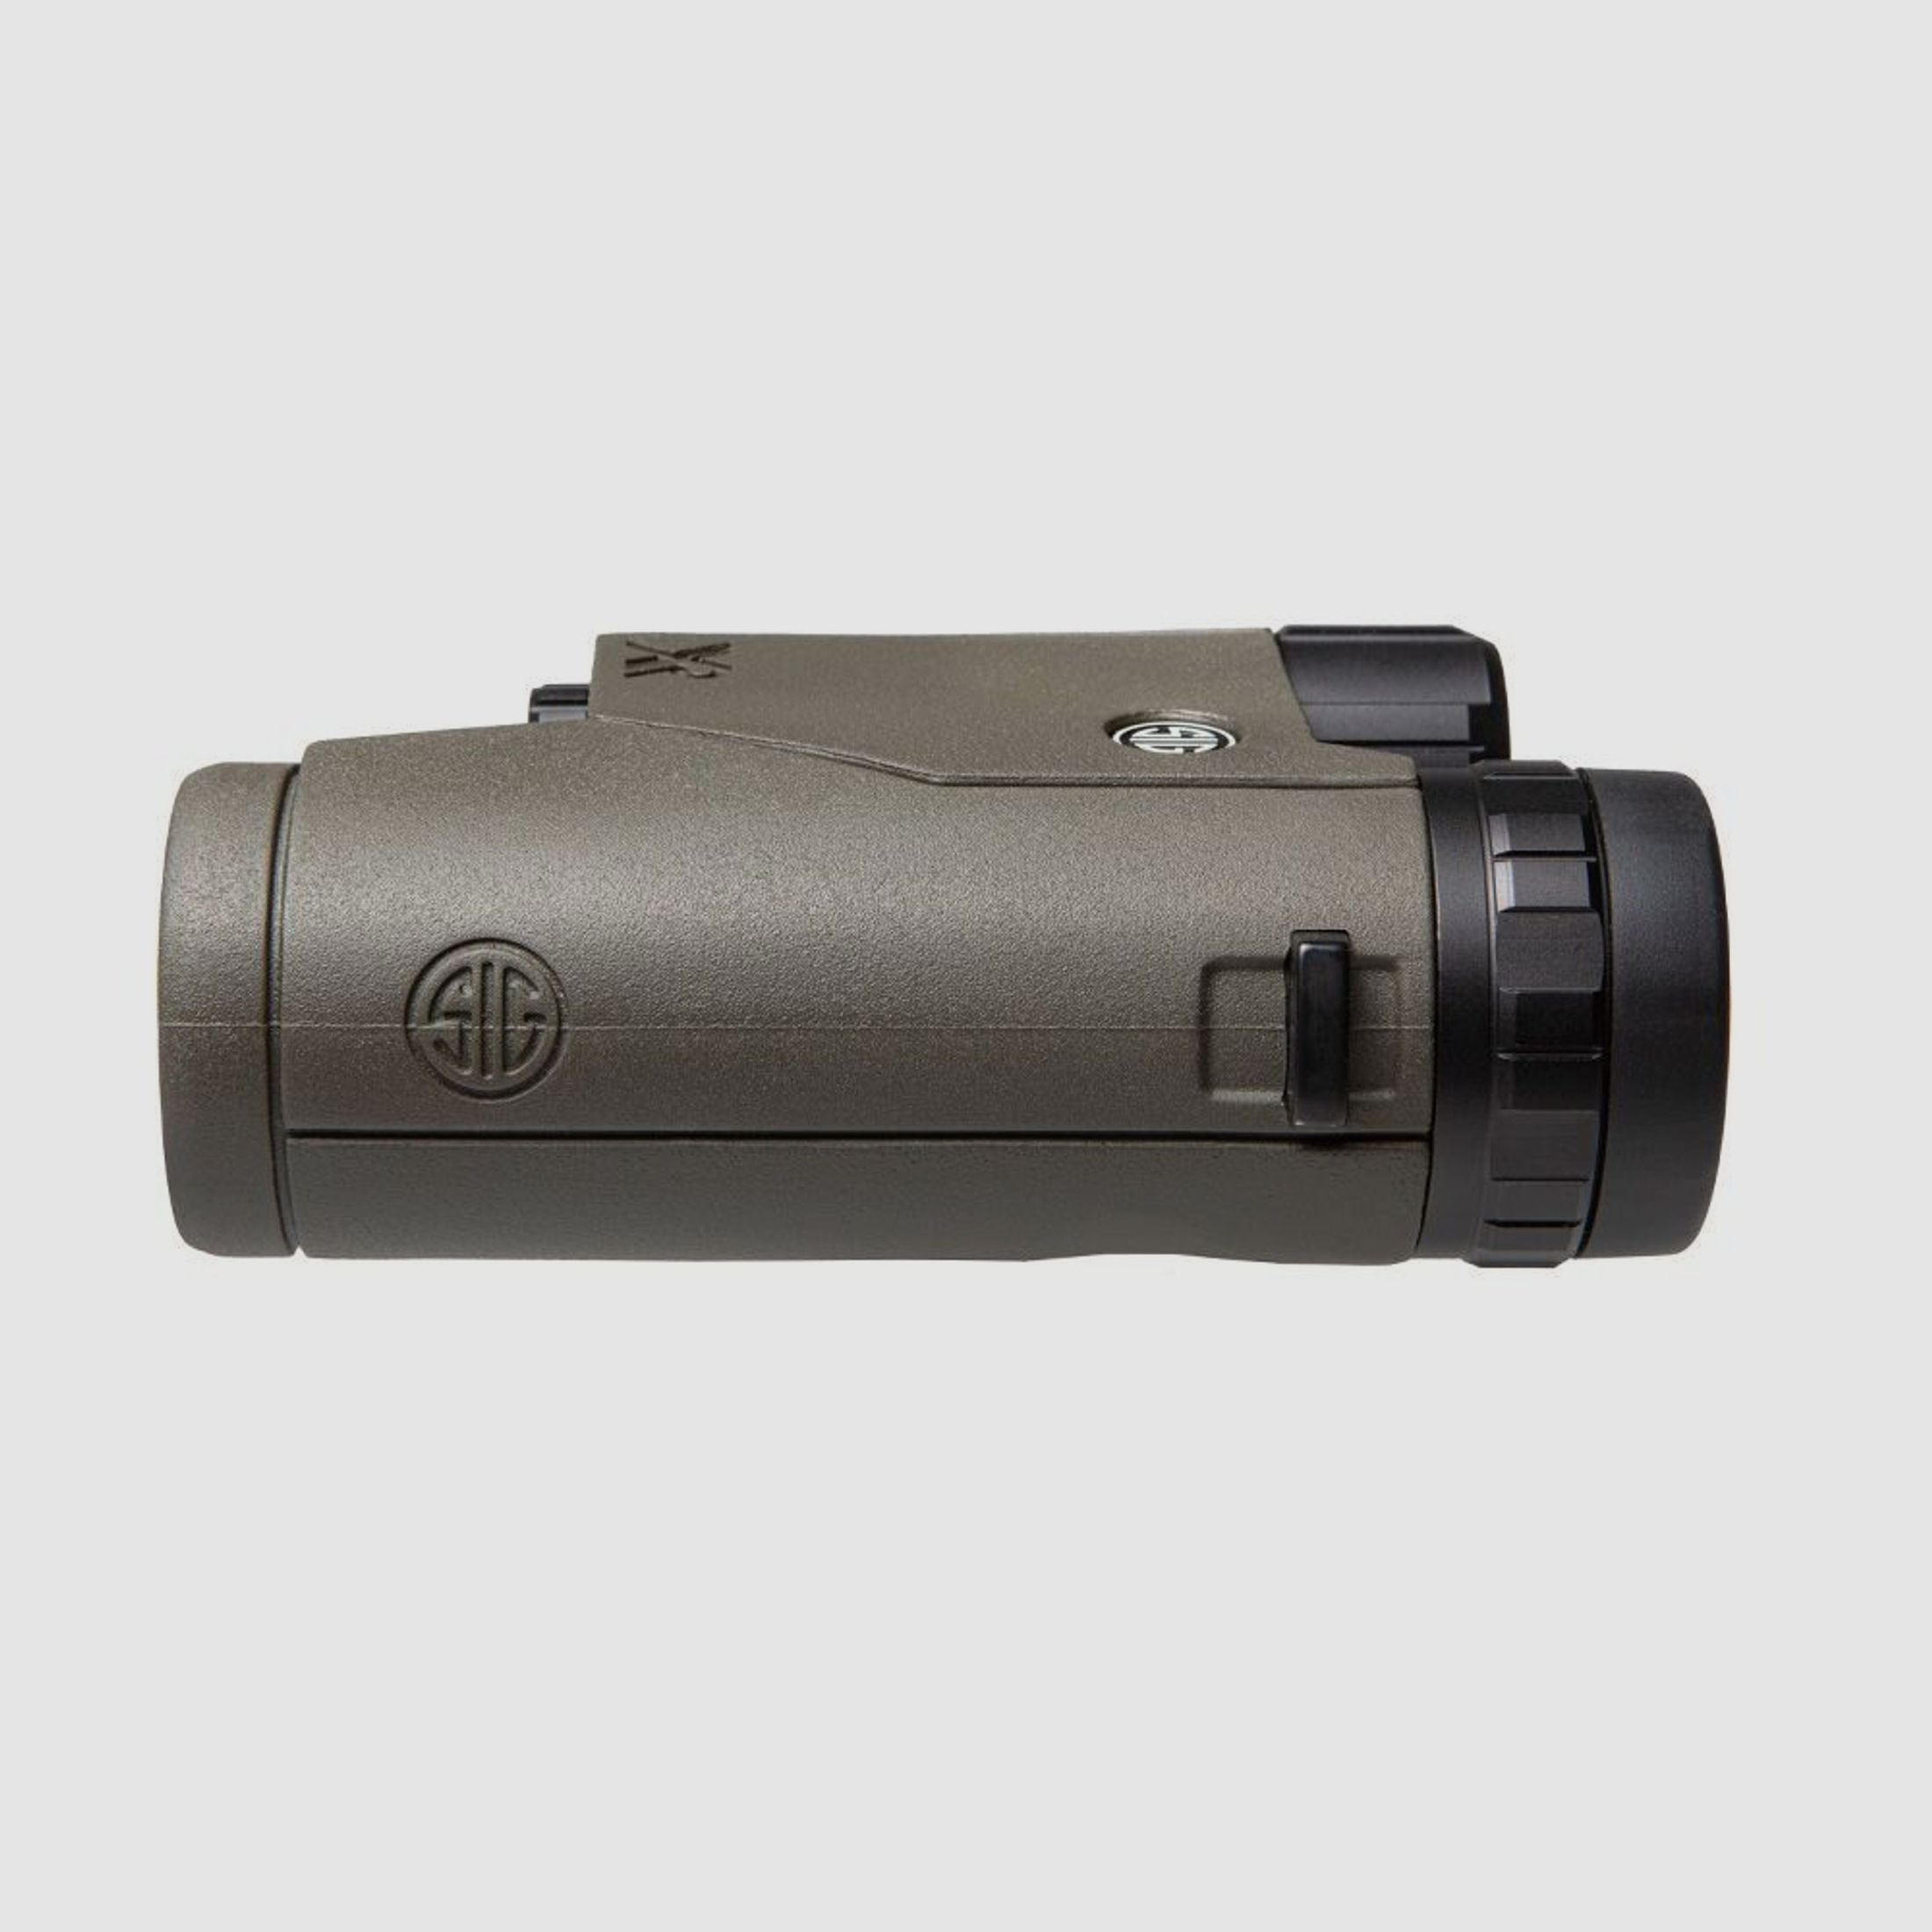 Sig Sauer KILO6K Compact BDX Laser Entfernungsmesser 10x32mm